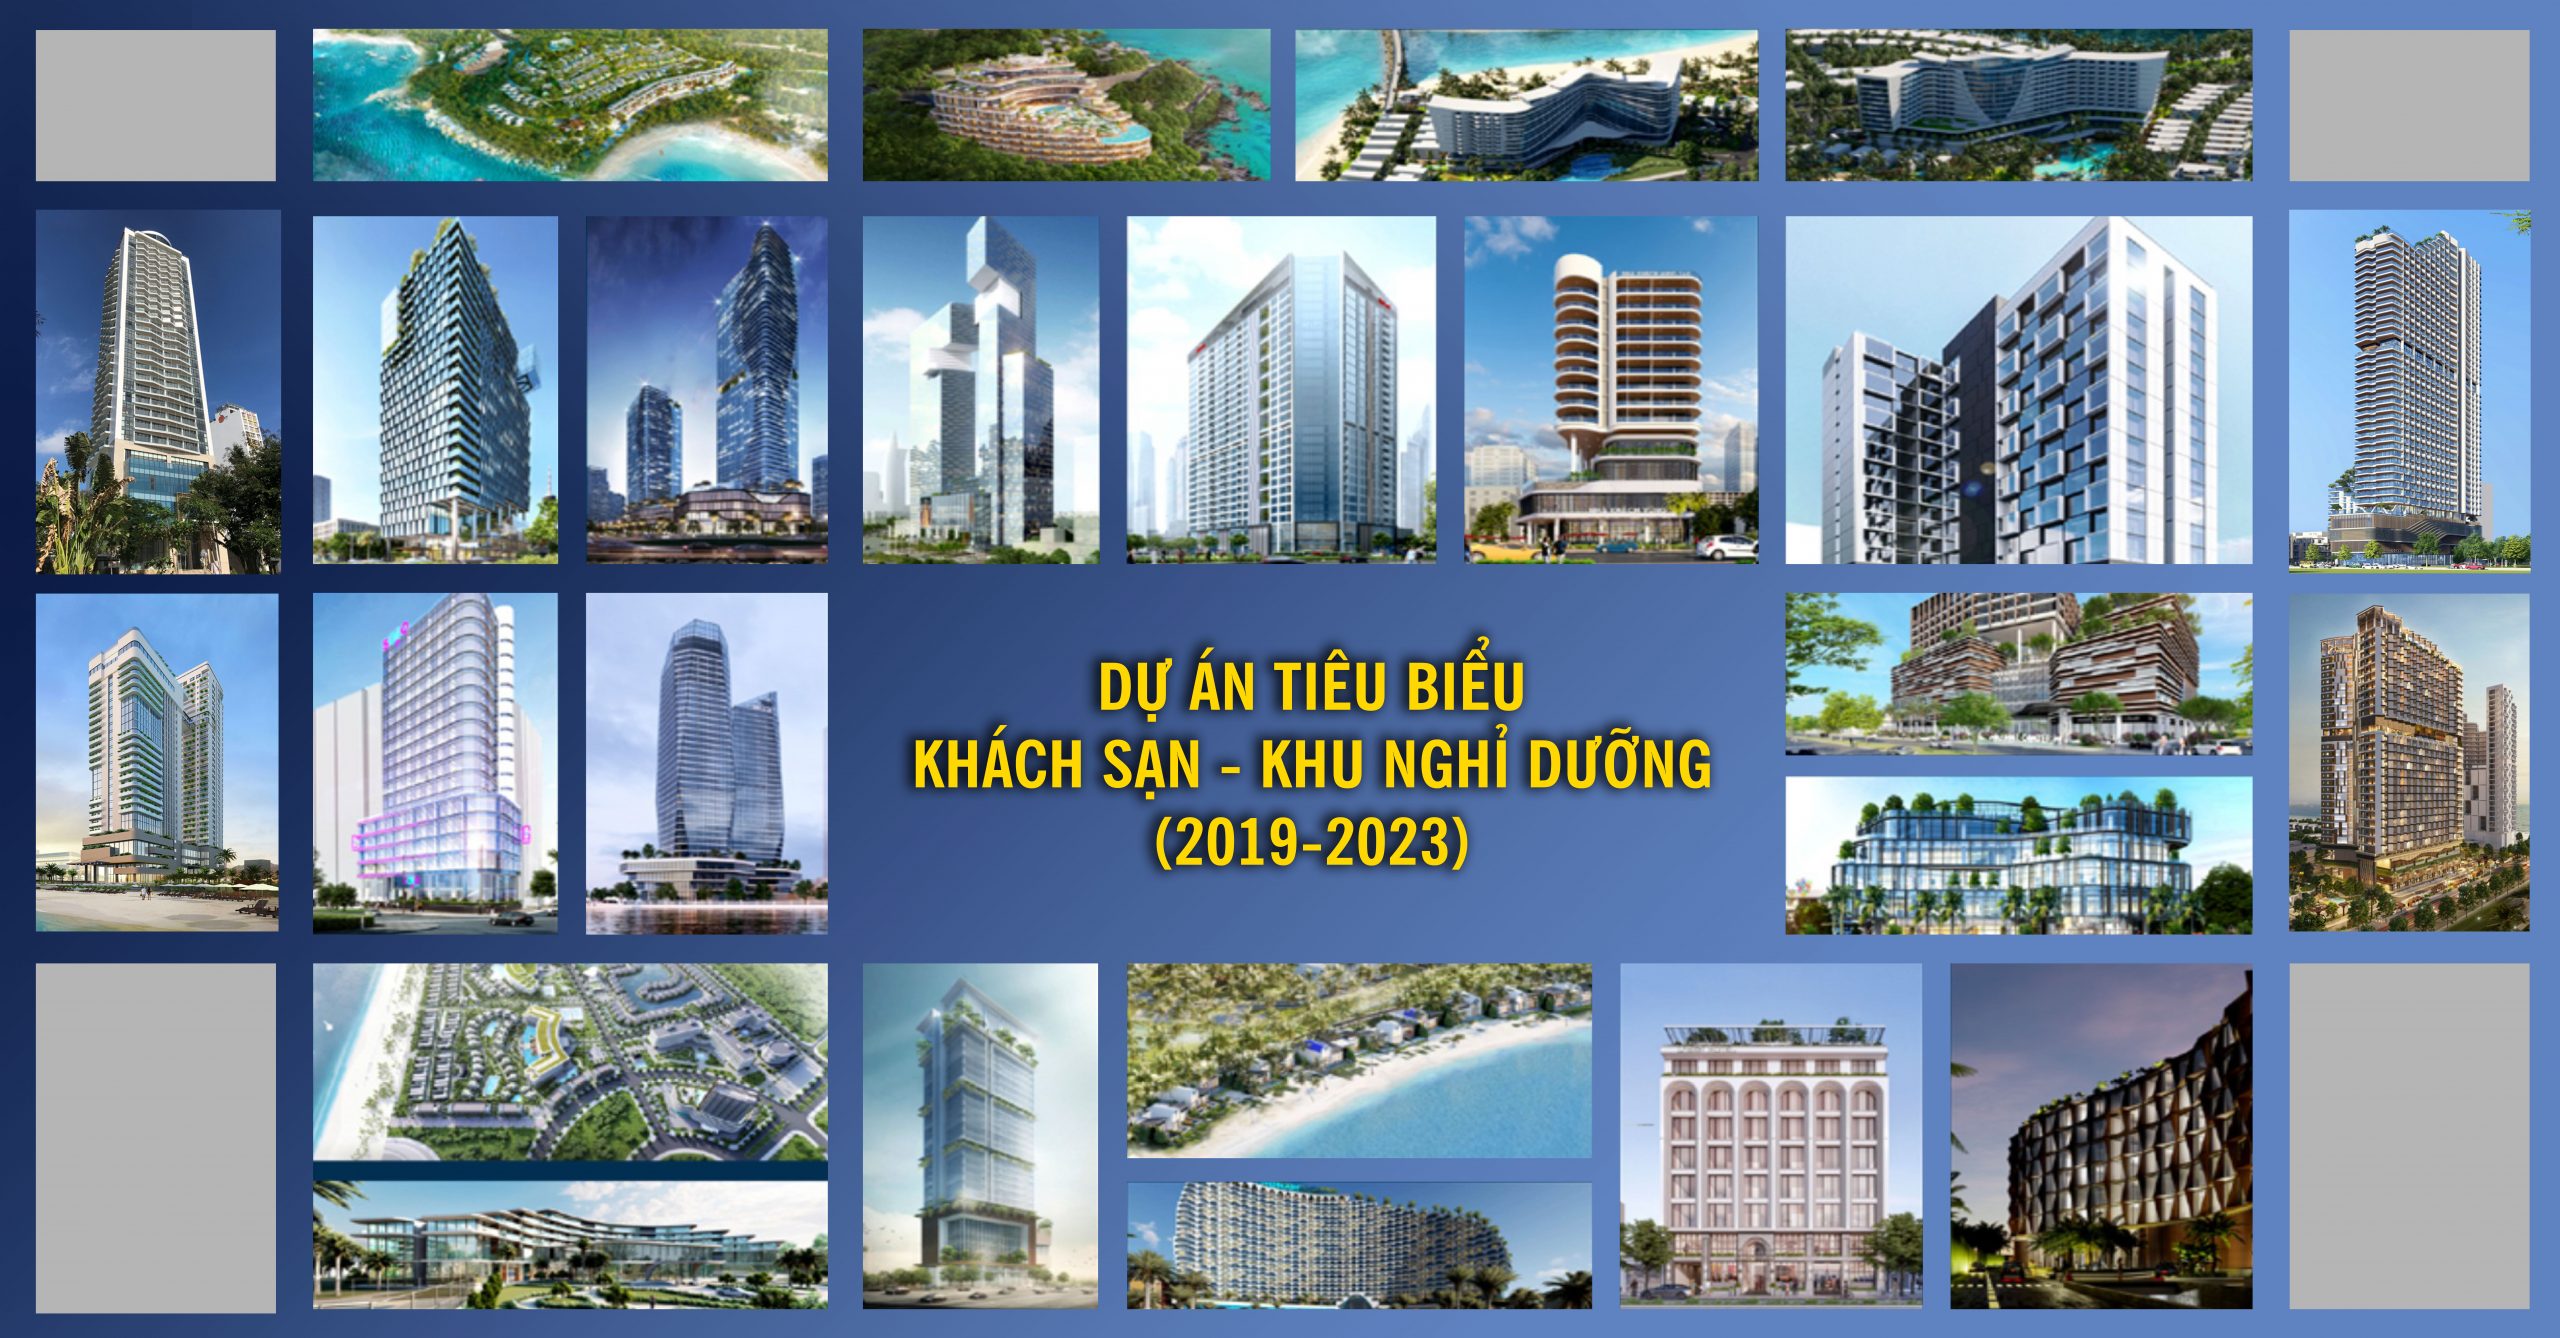 VNCC_Dự án Khách sạn và Khu nghỉ dưỡng 2019-2023